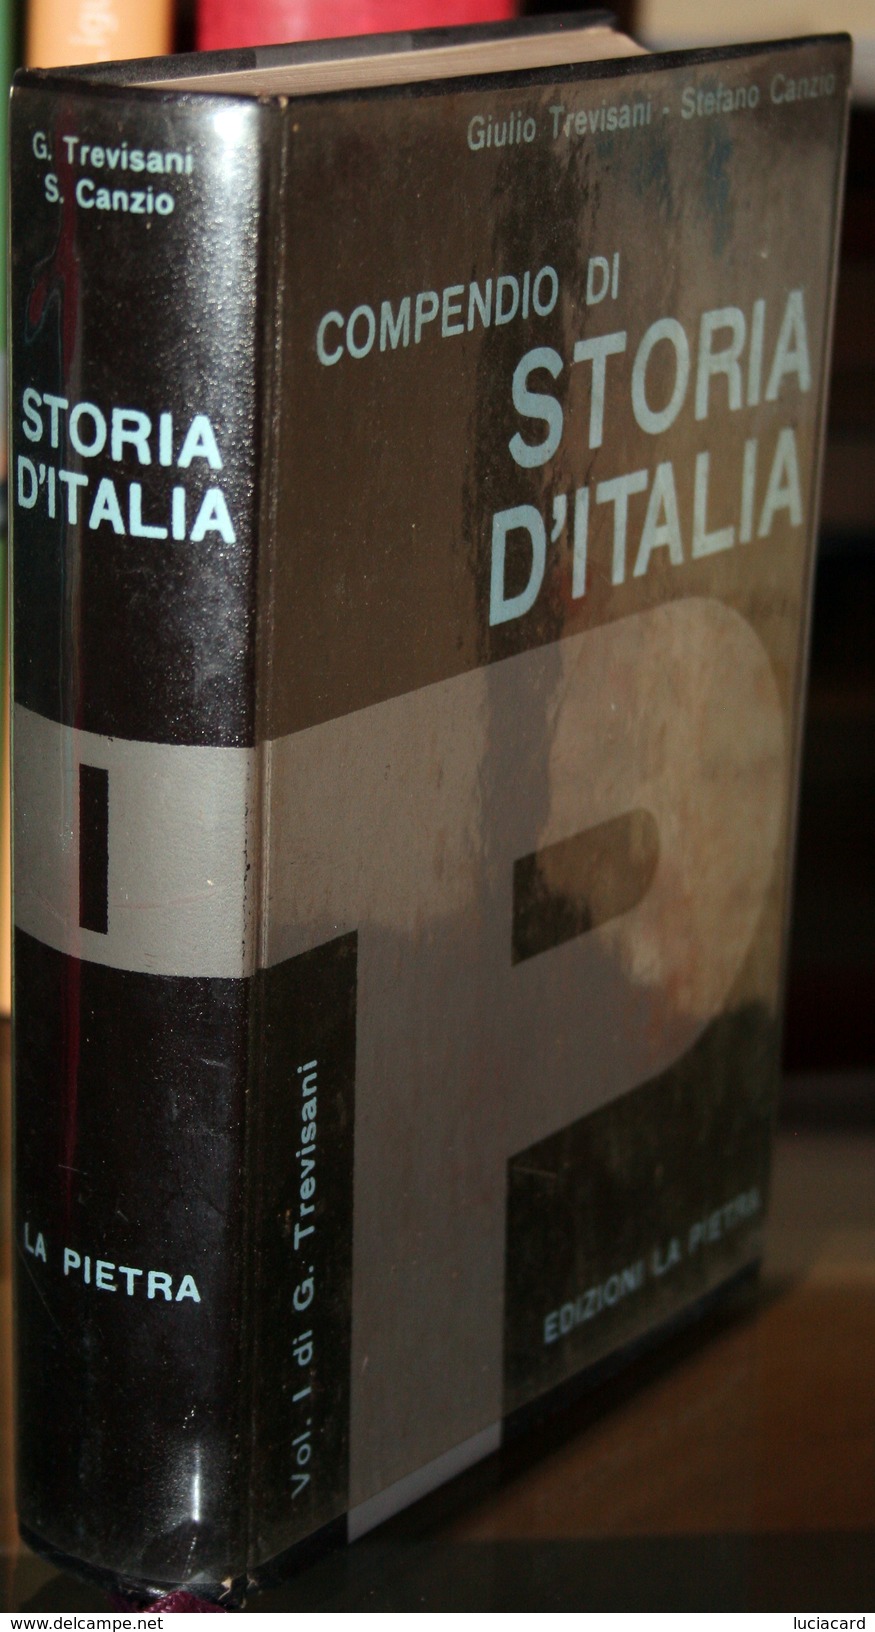 LIBRO -COMPENDIO DI STORIA D'ITALIA -VOLUME 1 DI G. TREVISANI -EDIZIONI LA PIETRA - History